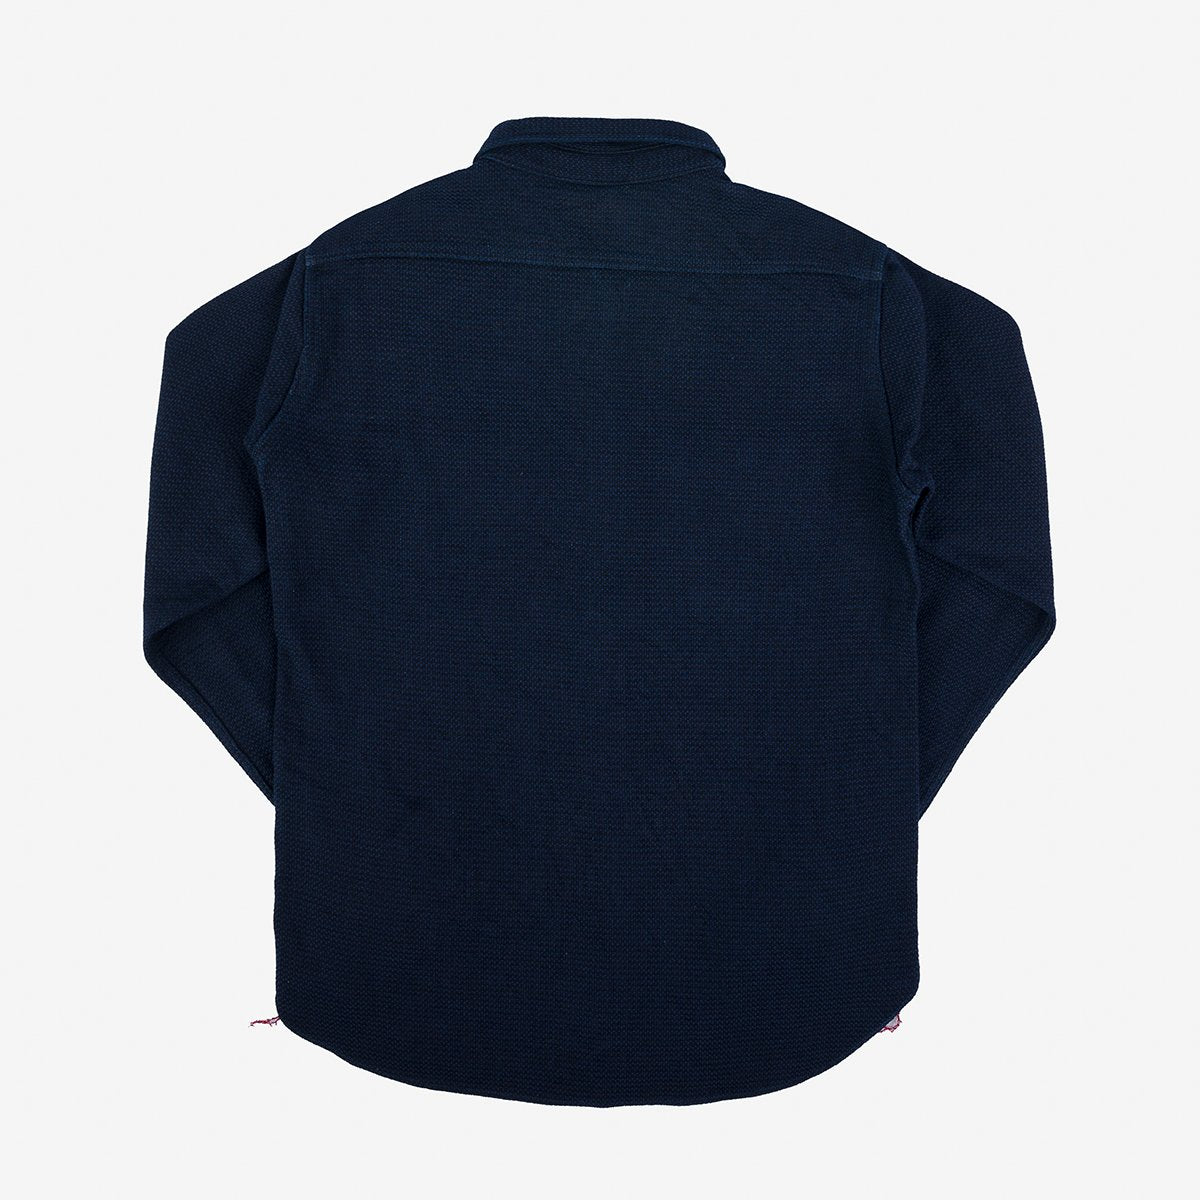 IHSH-380-IND 12oz Dobby Cloth Work Shirt Indigo